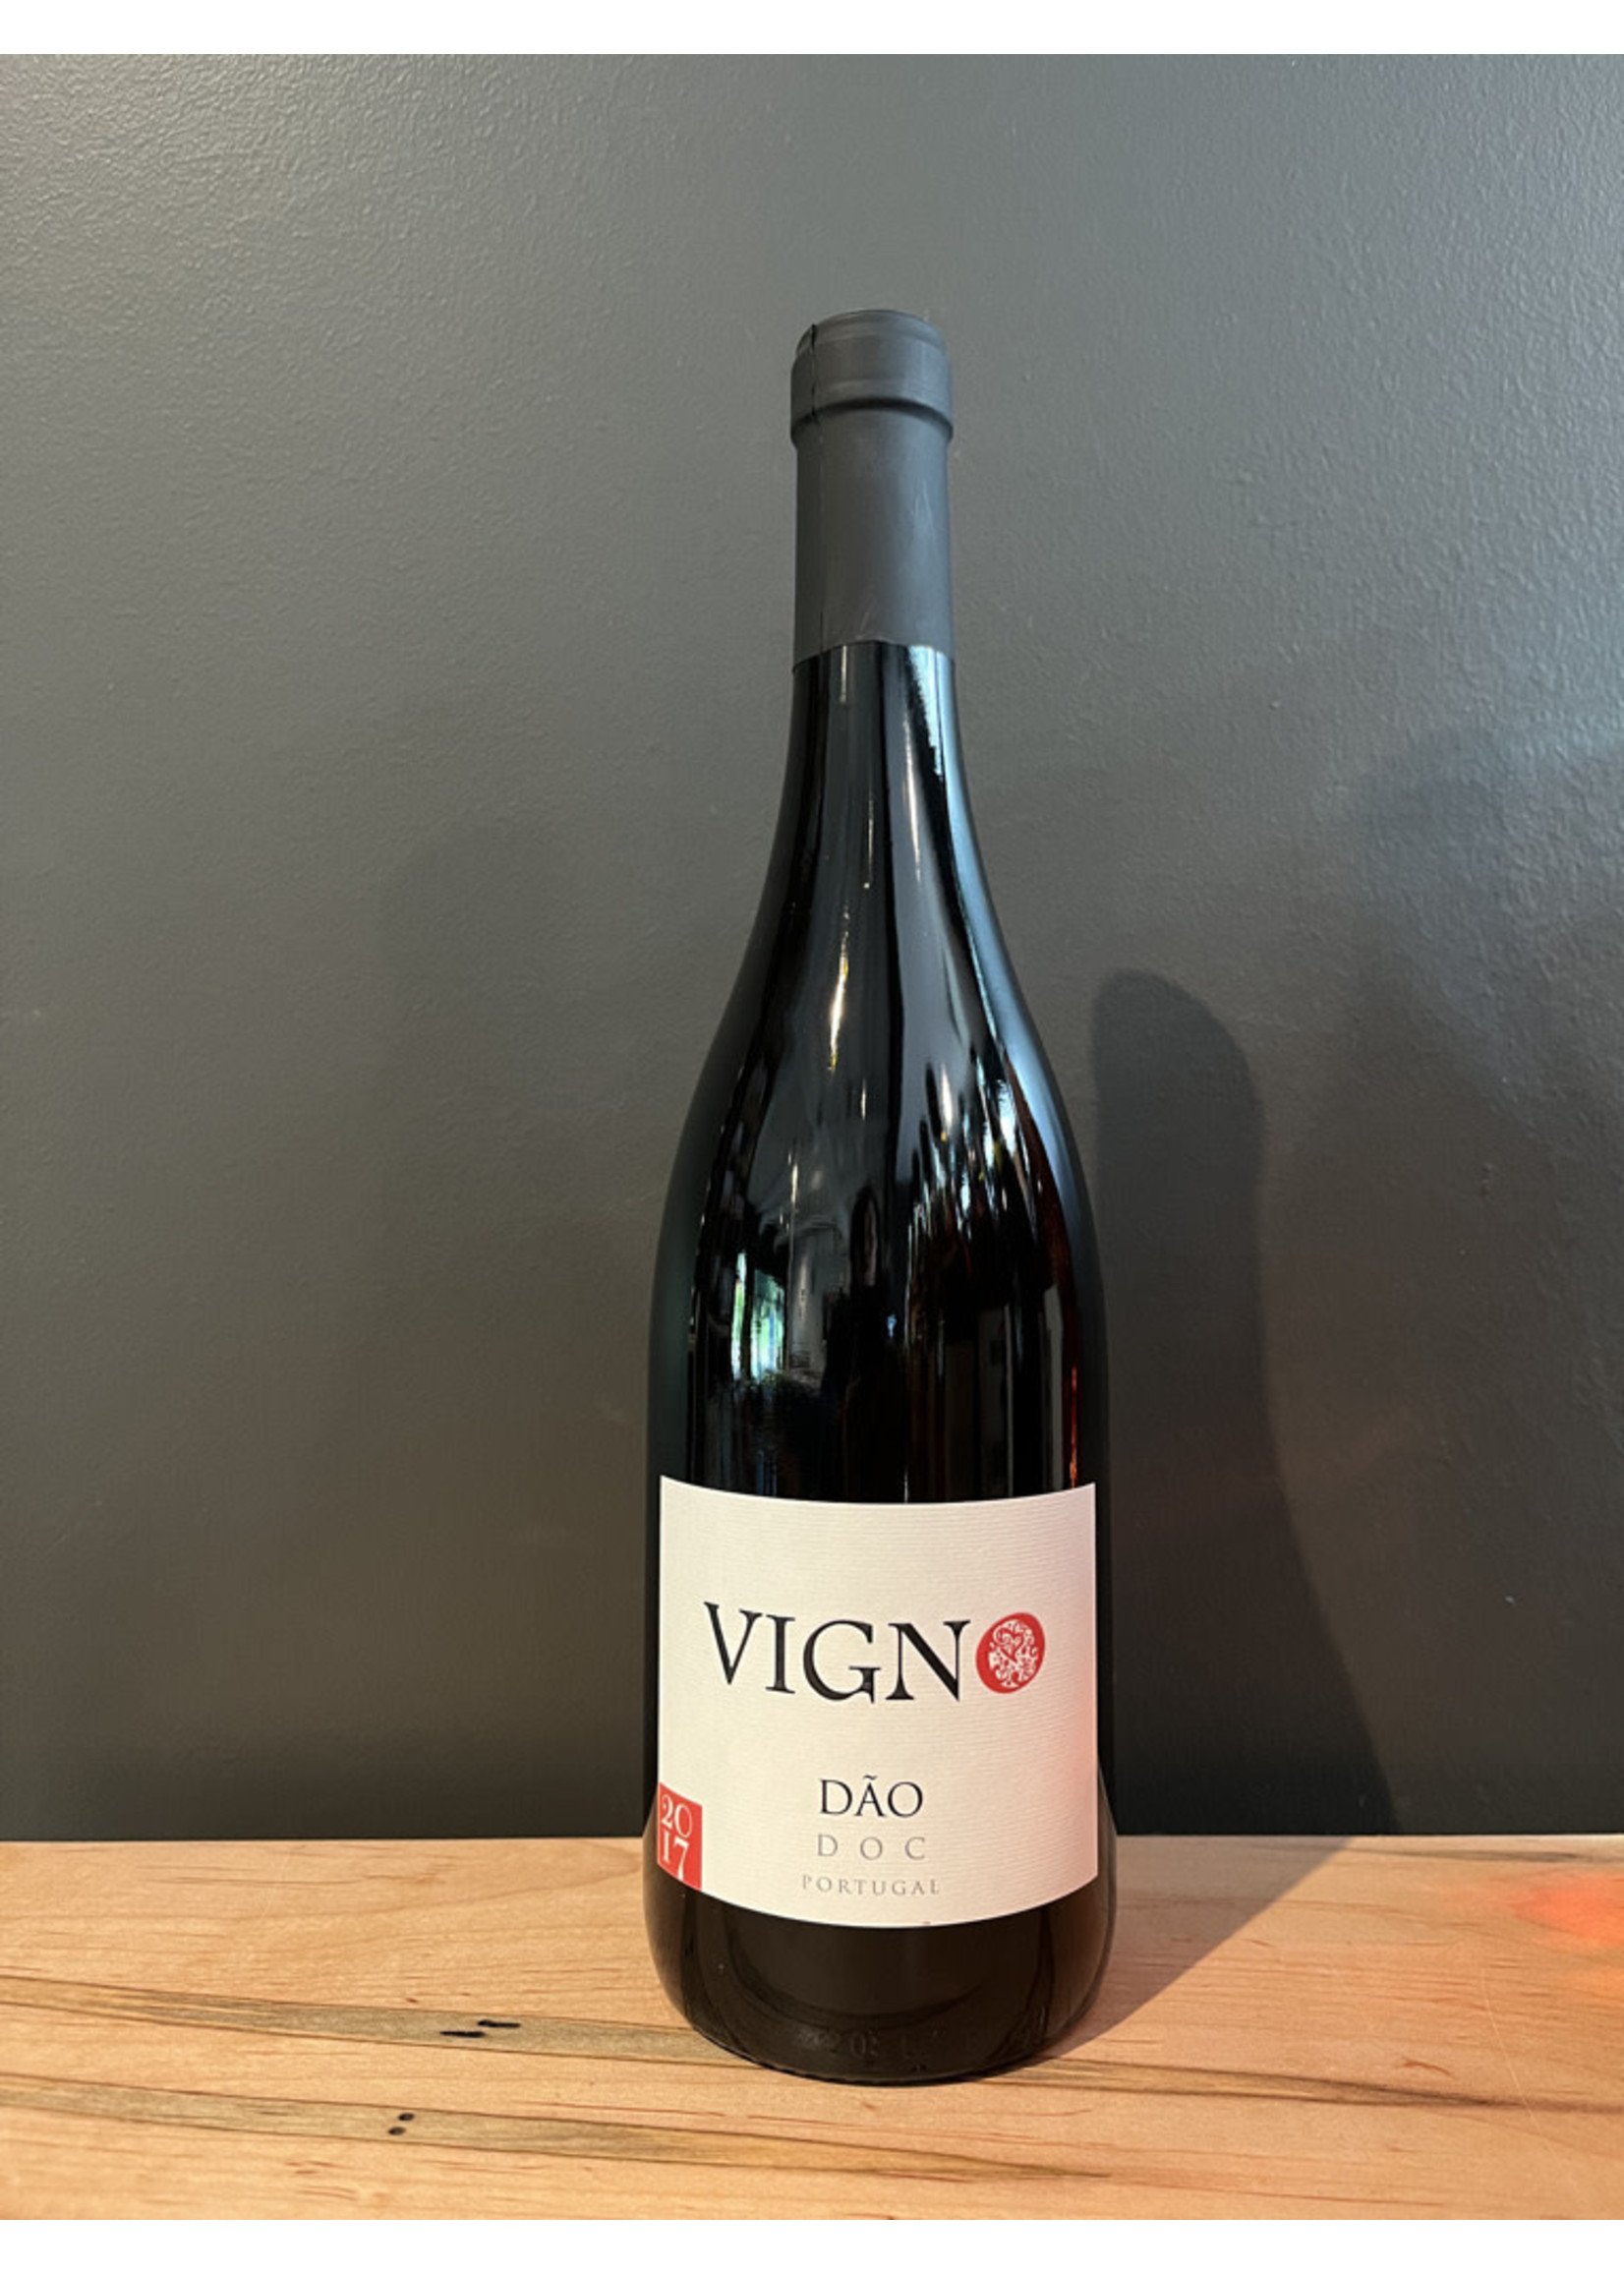 Vigno - Dao Tinto 2019